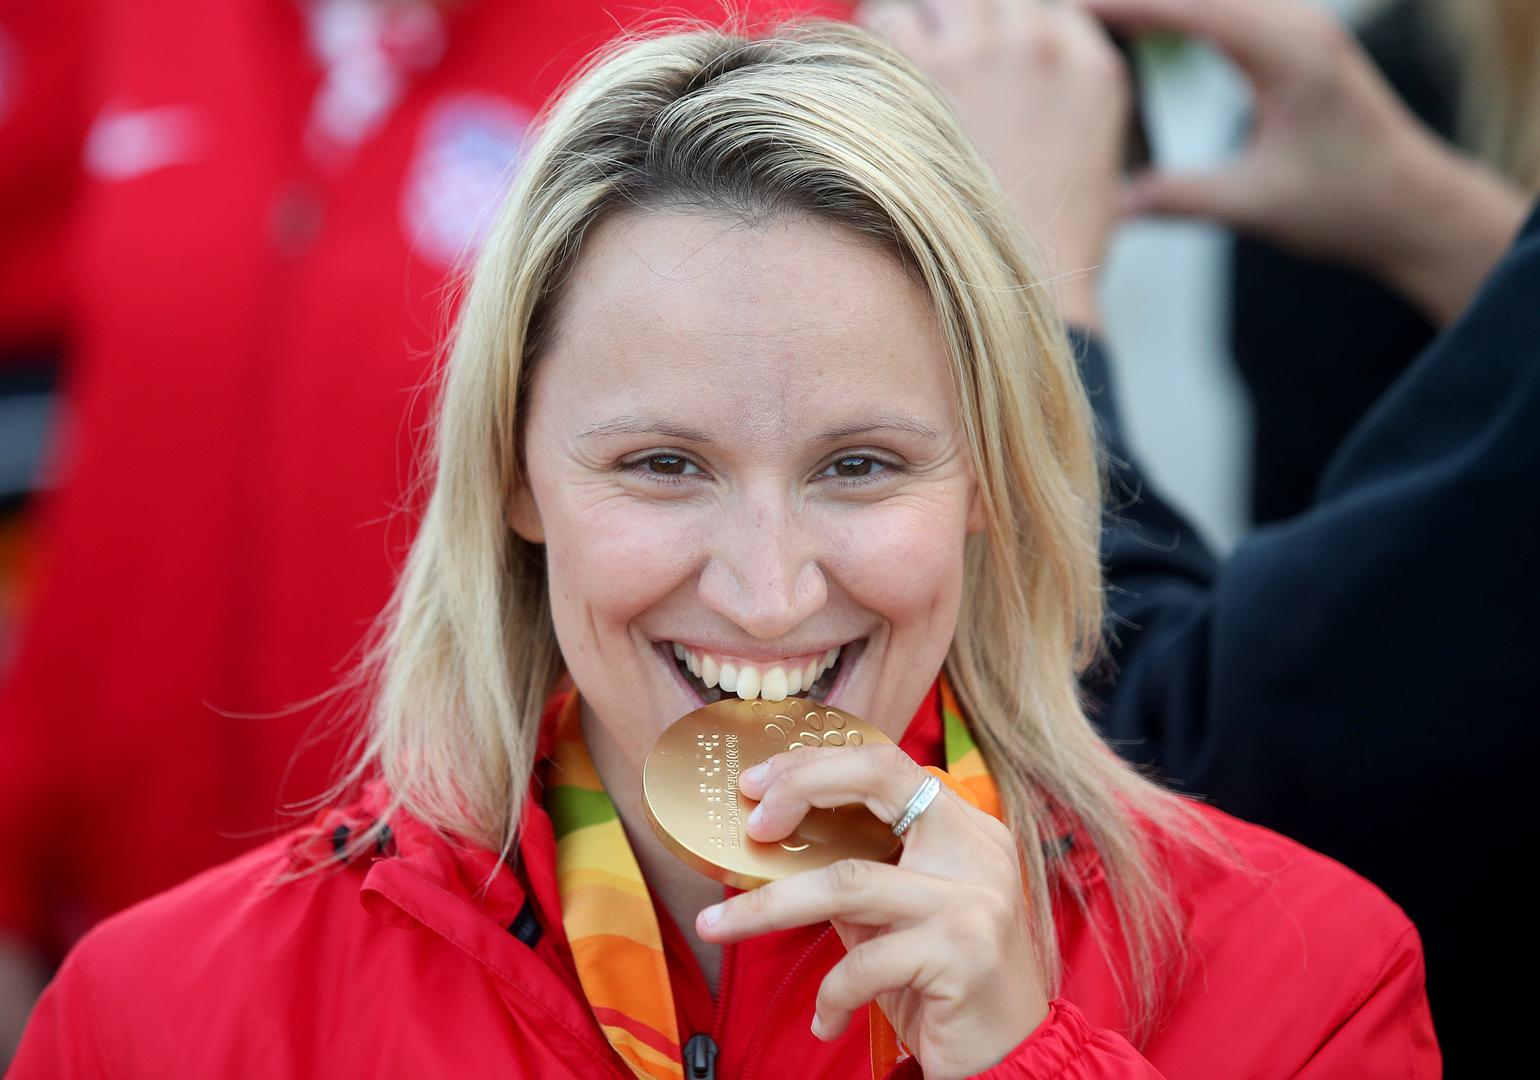 4. Sandra Paović, pridružila se paraolimpijskoj obitelji nakon teške prometne nesreće koju je doživjela u siječnju 2009. Nakon dugotrajnog oporavka vraća se u vrh stolnog tenisa osvojivši zlatnu medalju na Paraolimpijskim igrama u Rio de Janeiru.